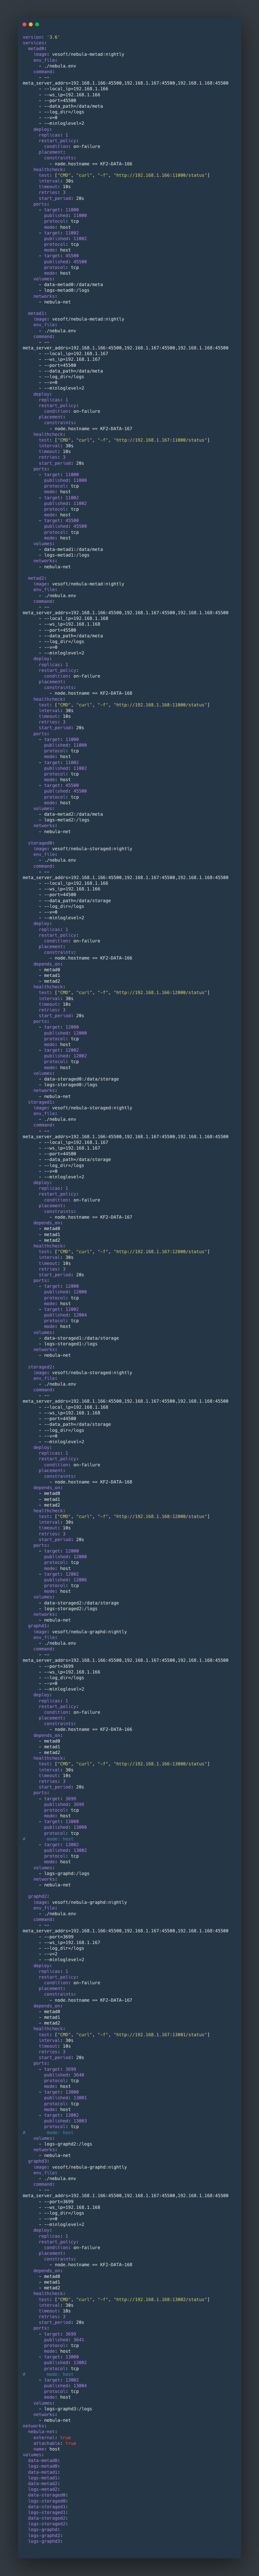 用 Docker Swarm 快速部署 Nebula Graph 集群-开源基础软件社区